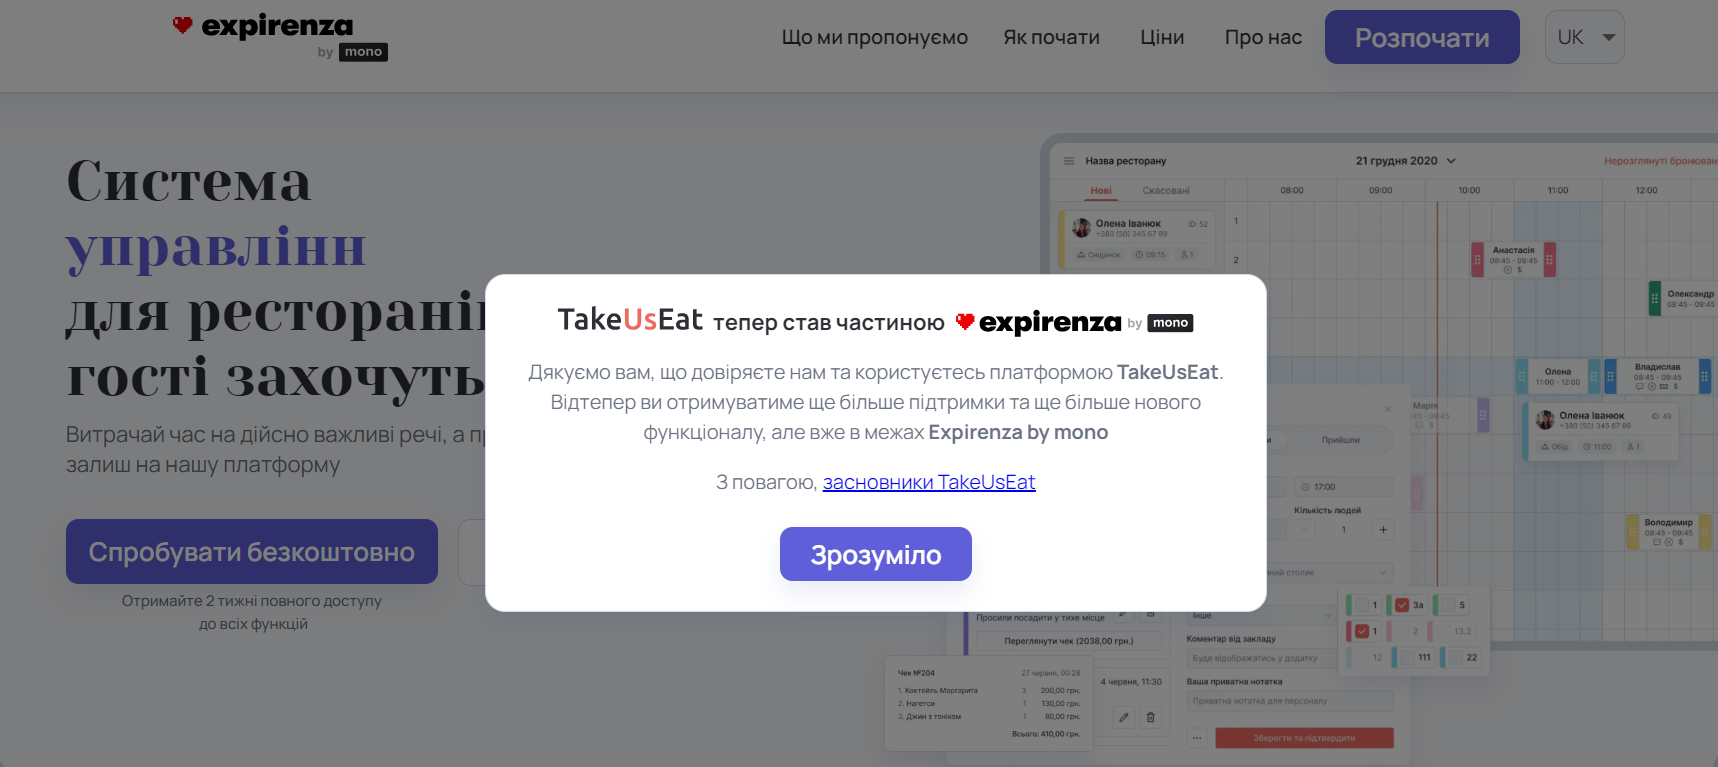 TakeUsEat + expirenza by mono — Monobank купил сервис онлайн-бронирования столиков, основанный студентами Могилянки